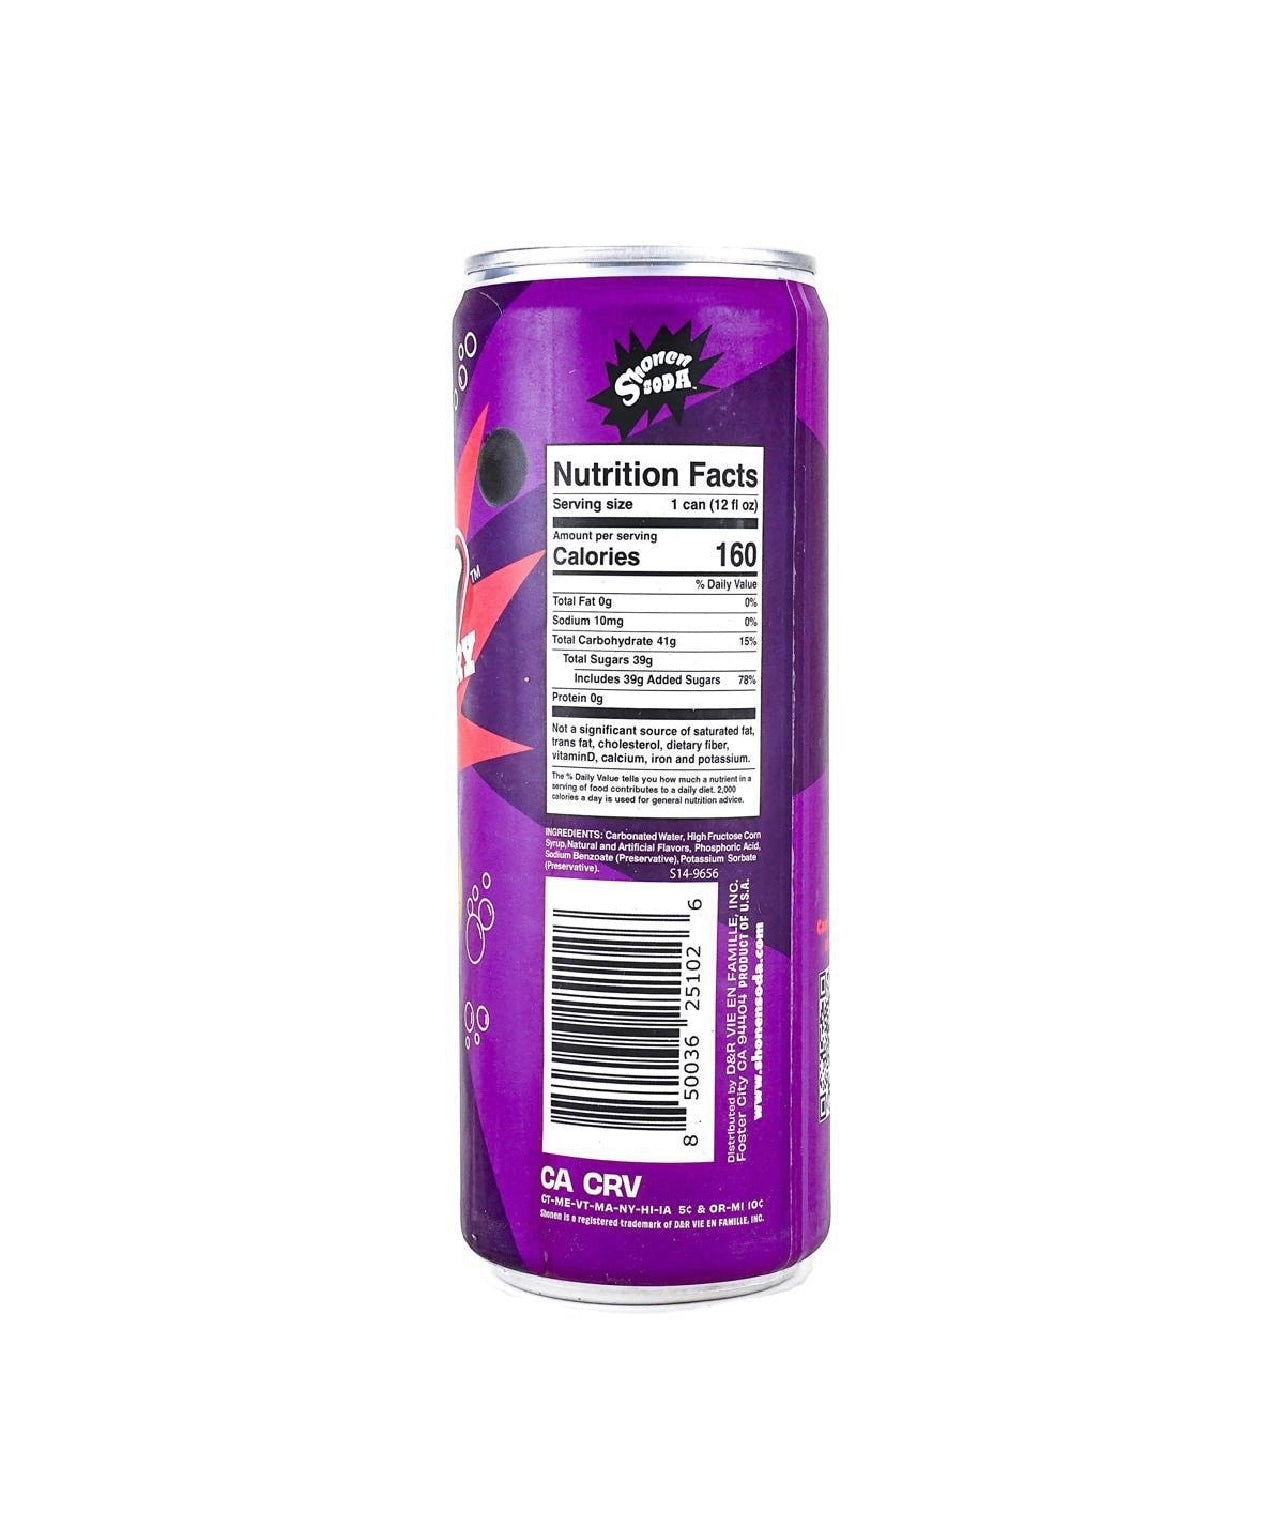 SHONEN SODA Elderberry Creme Soda,12 fl oz